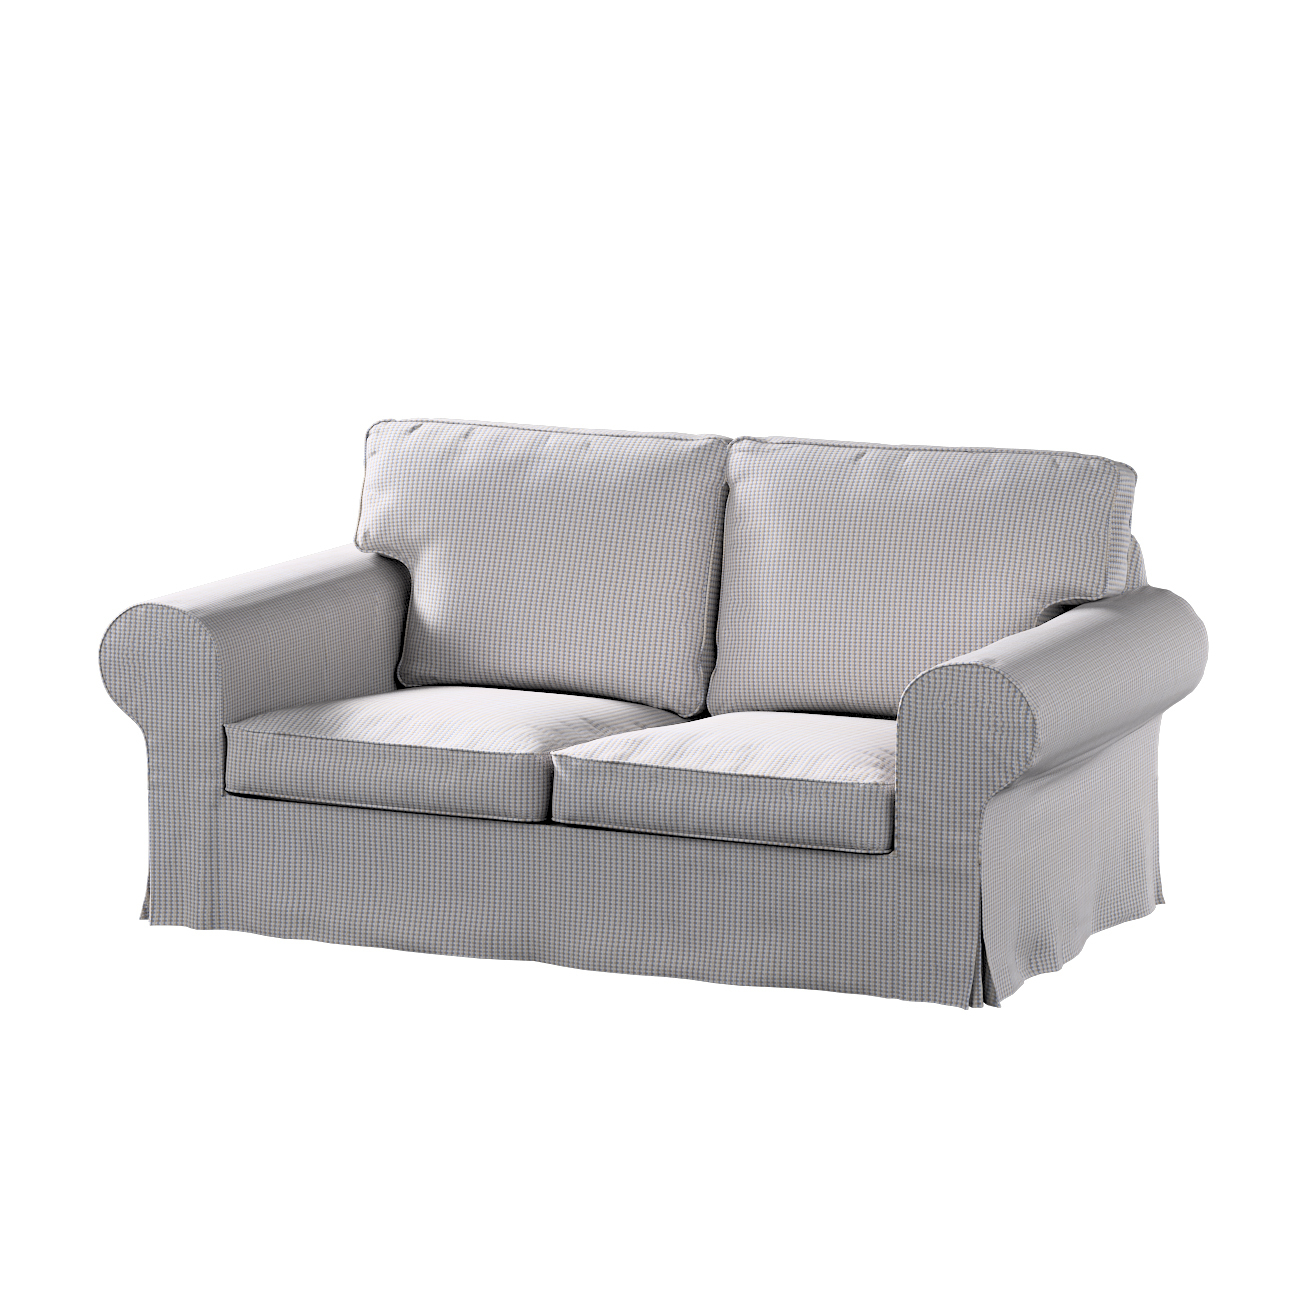 Bezug für Ektorp 2-Sitzer Sofa nicht ausklappbar, beige-blau, Sofabezug für günstig online kaufen